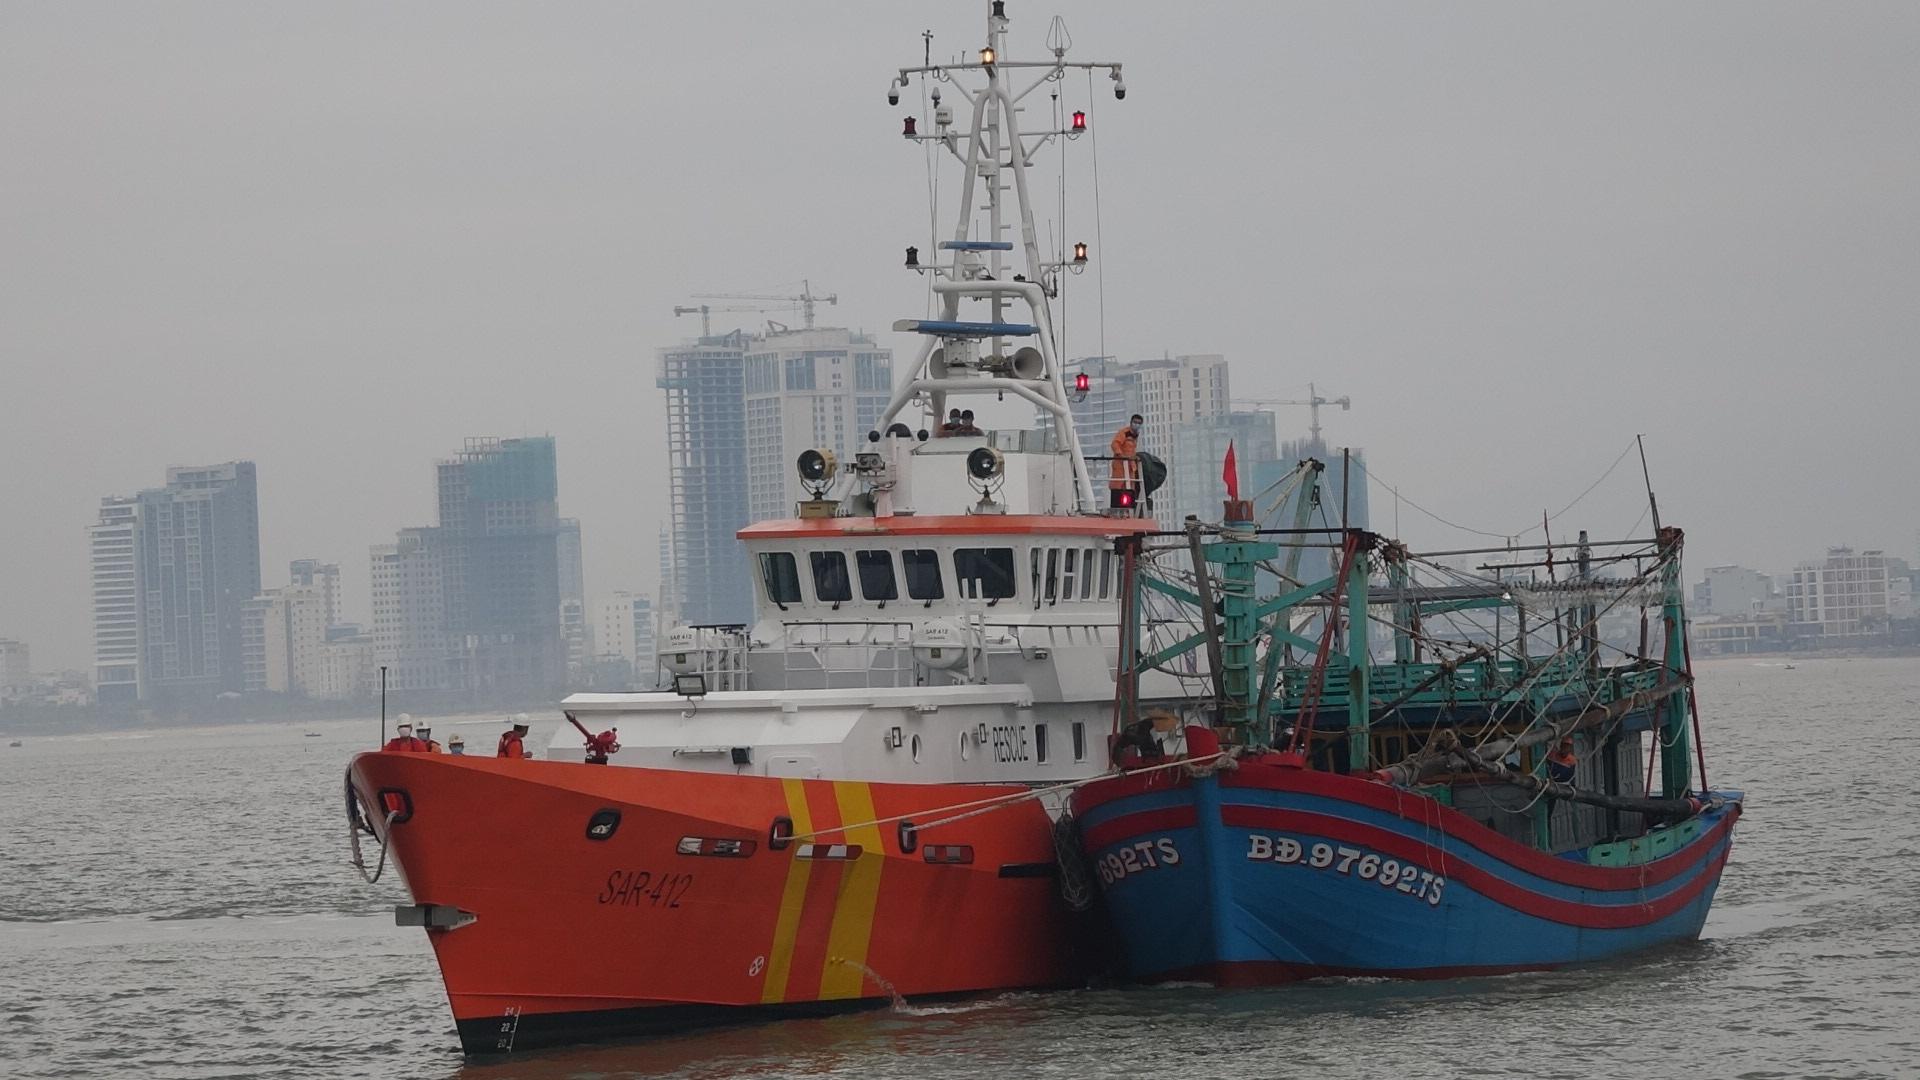 Cứu nạn 7 ngư dân tỉnh Bình Định trôi dạt trong biển động, tàu bị phá nước - ảnh 1